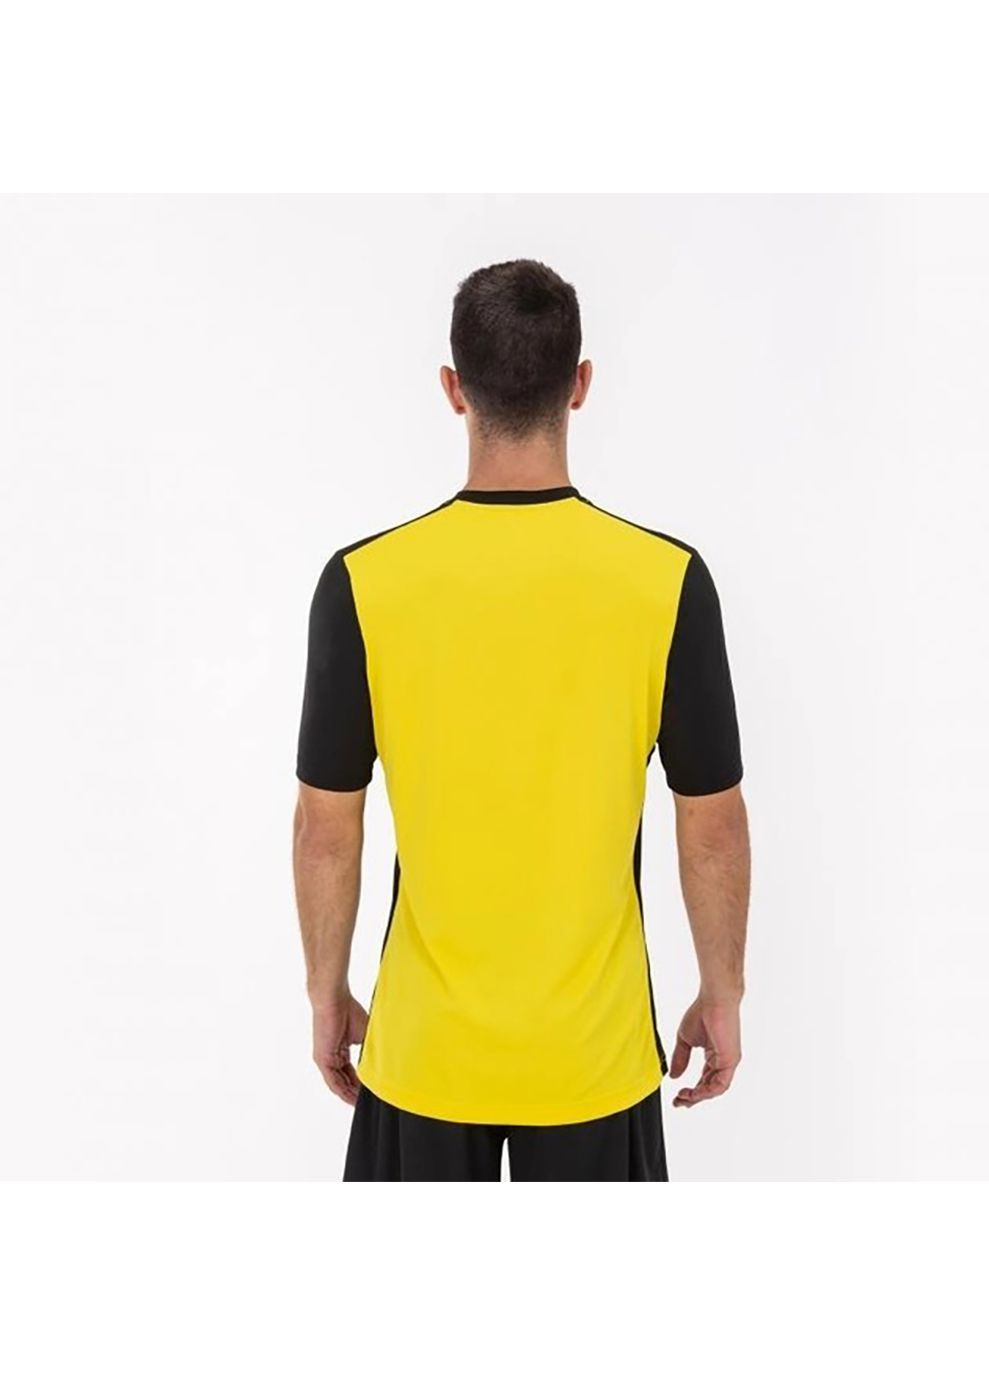 Комбинированная футболка flag ii t-shirt black-yellow s/s черный,желтый 101465bv.109 Joma